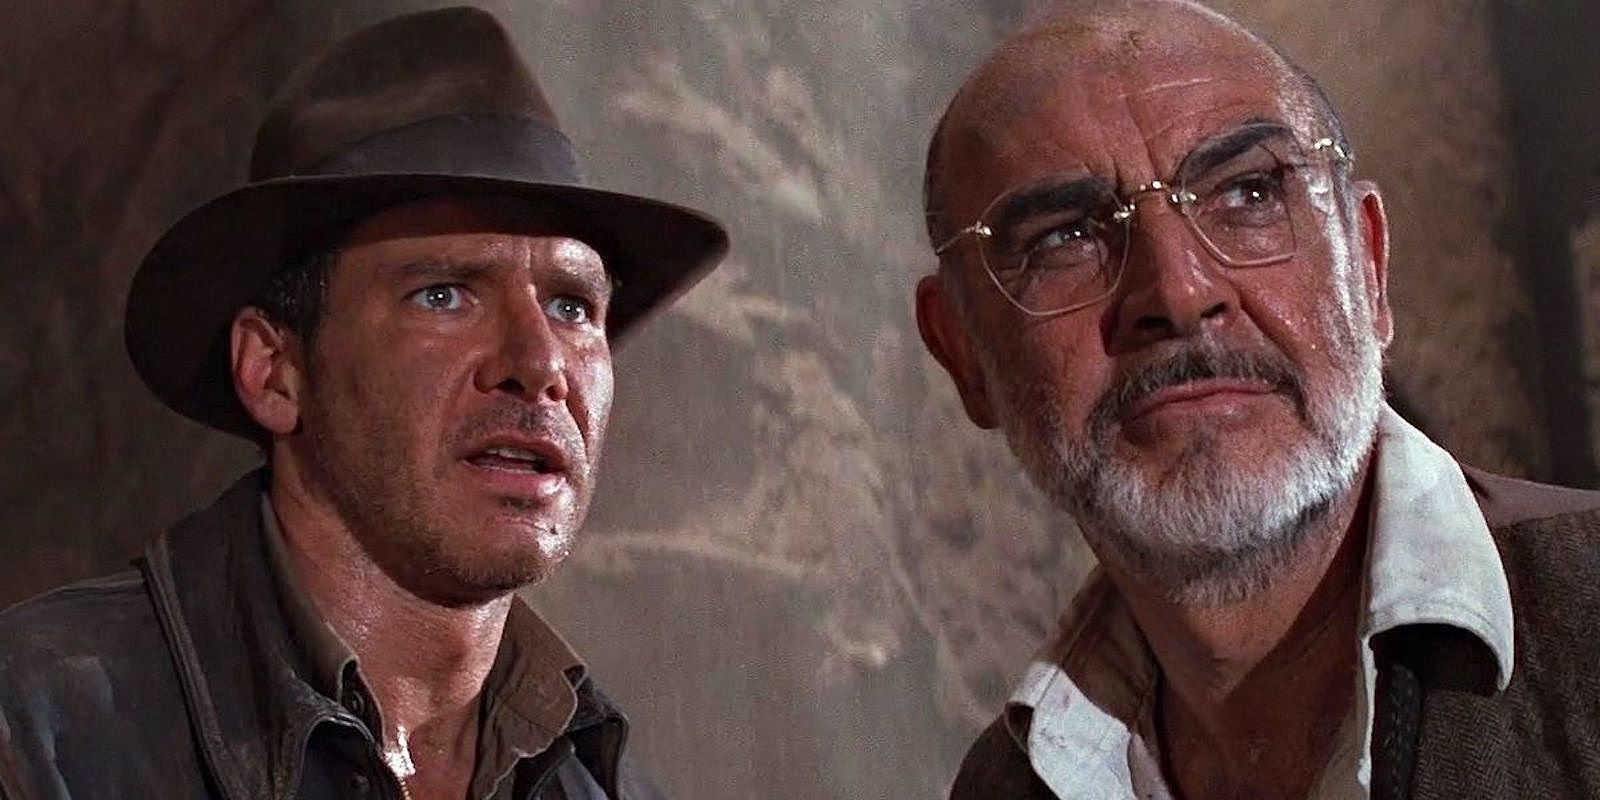 Indiana Jones and Henry Jones